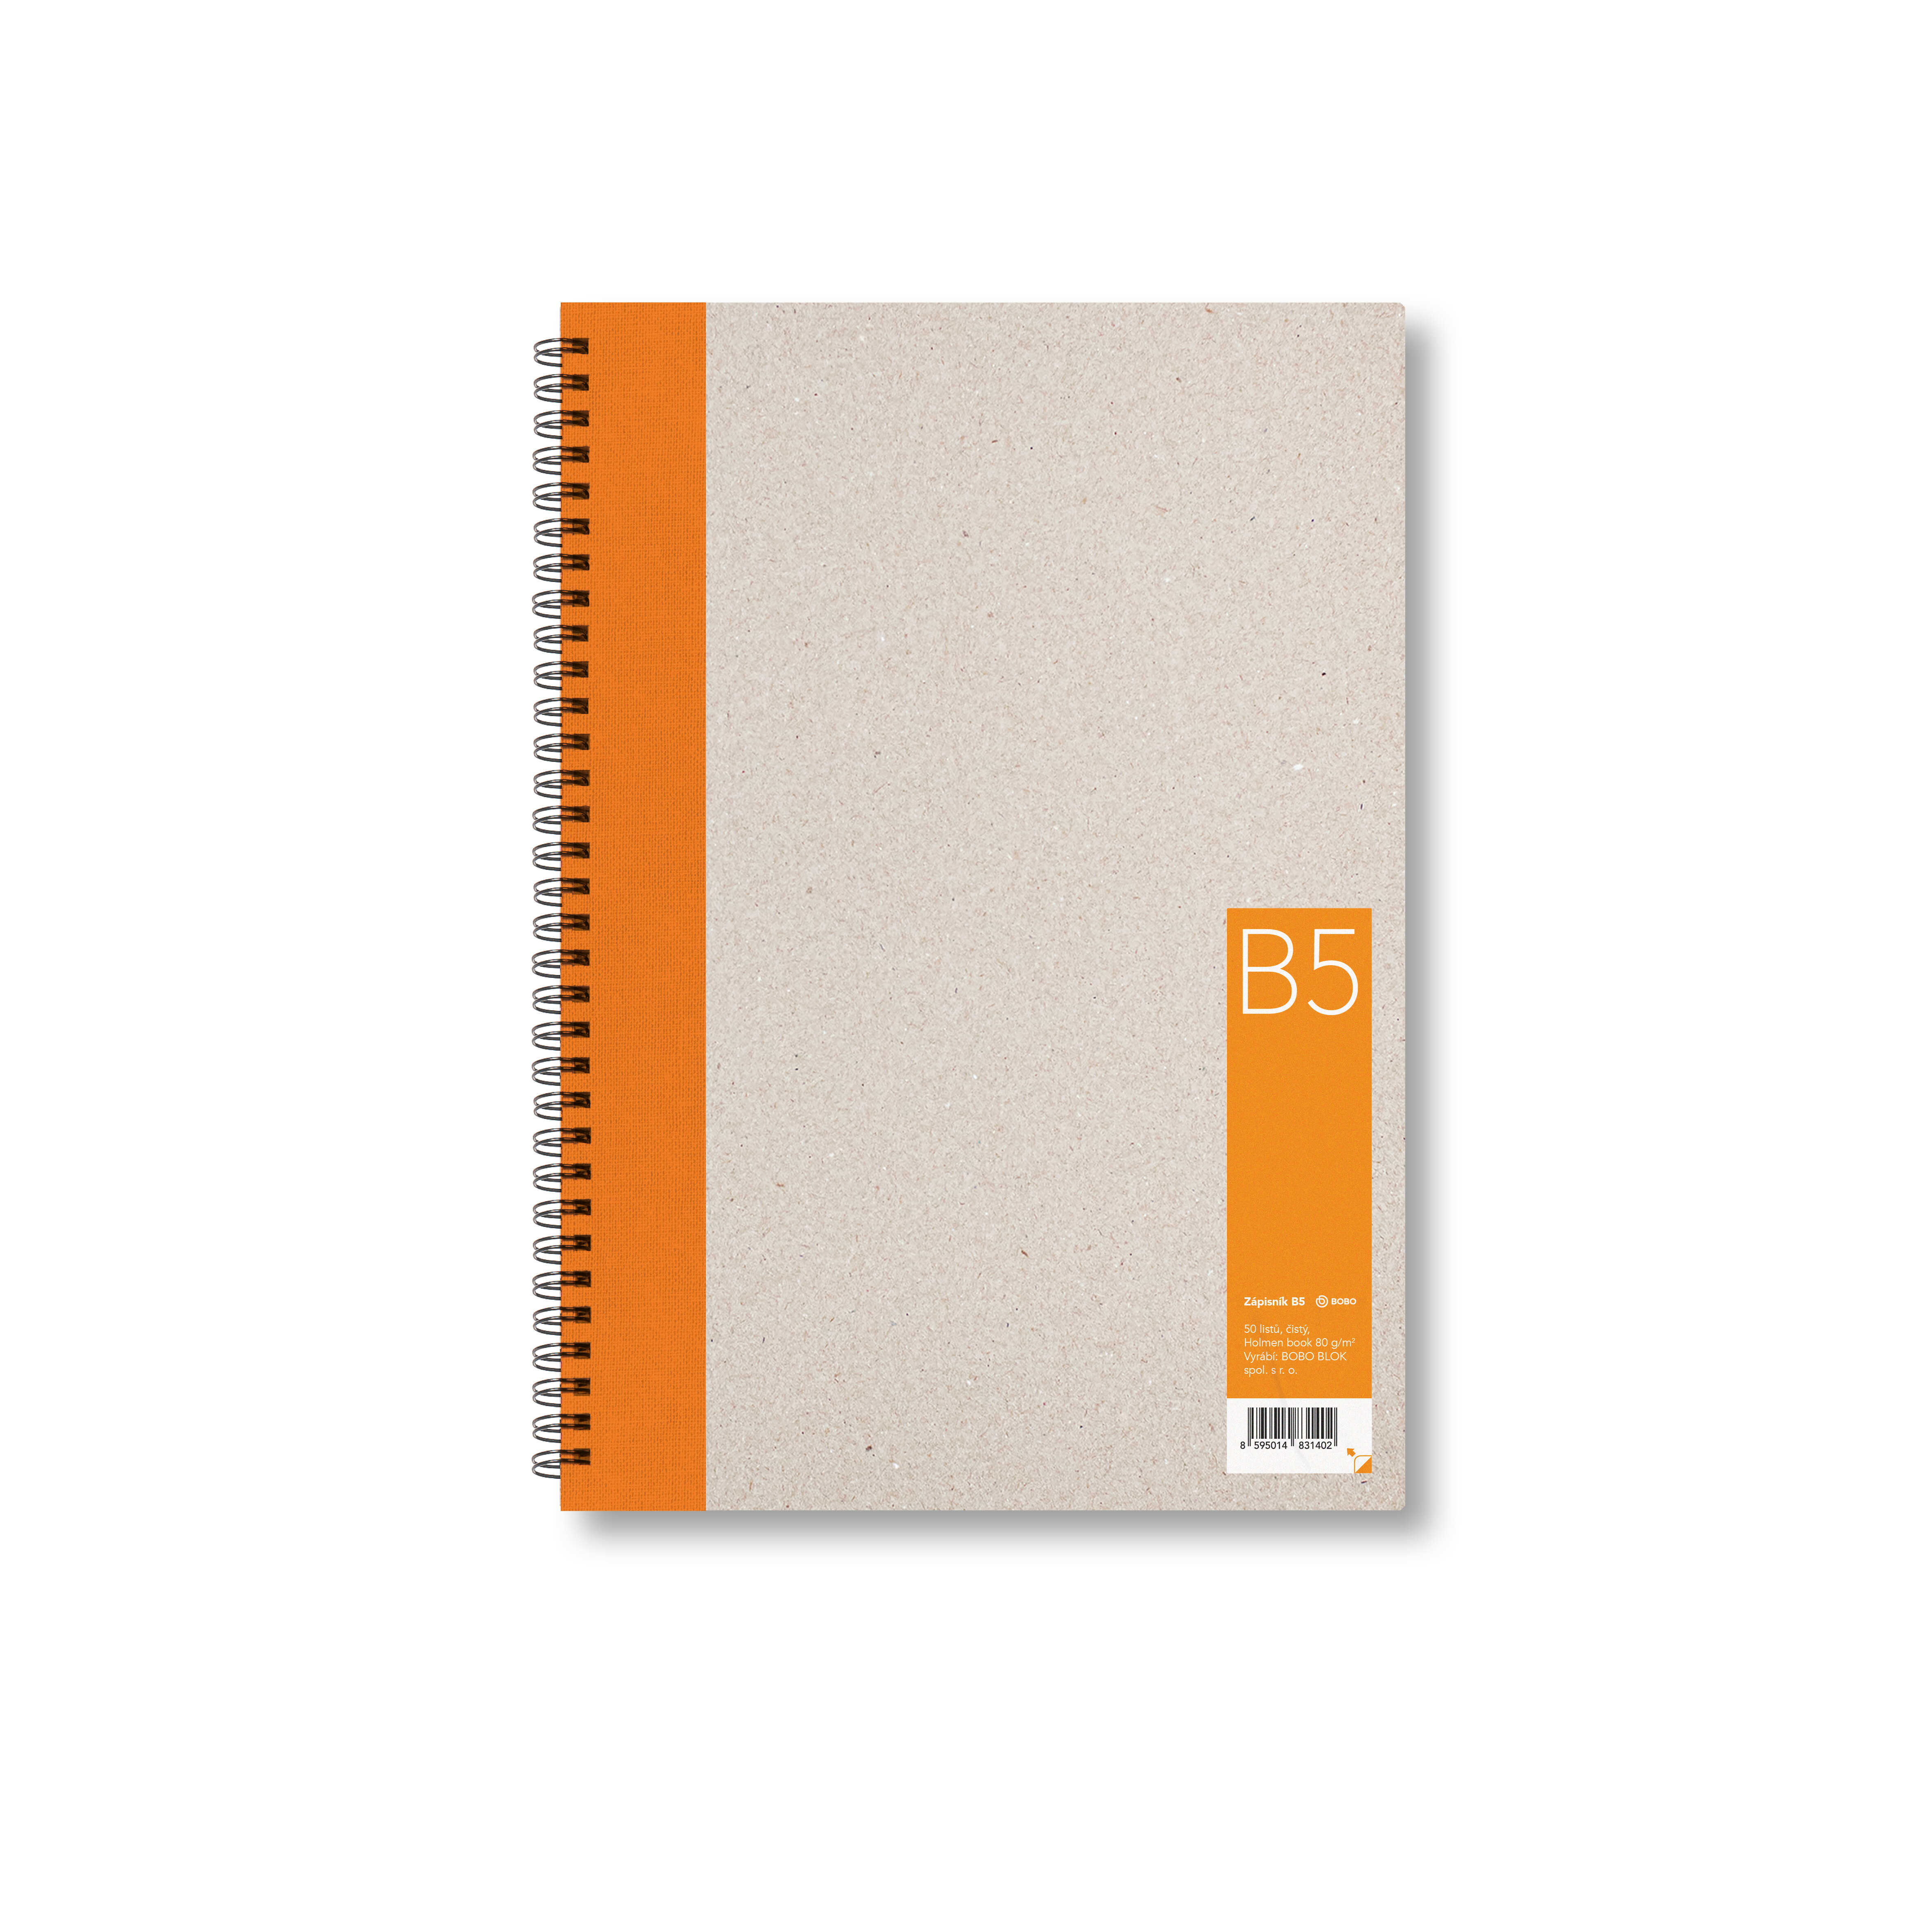 BOBO Zápisník, B5, čistý, oranžový